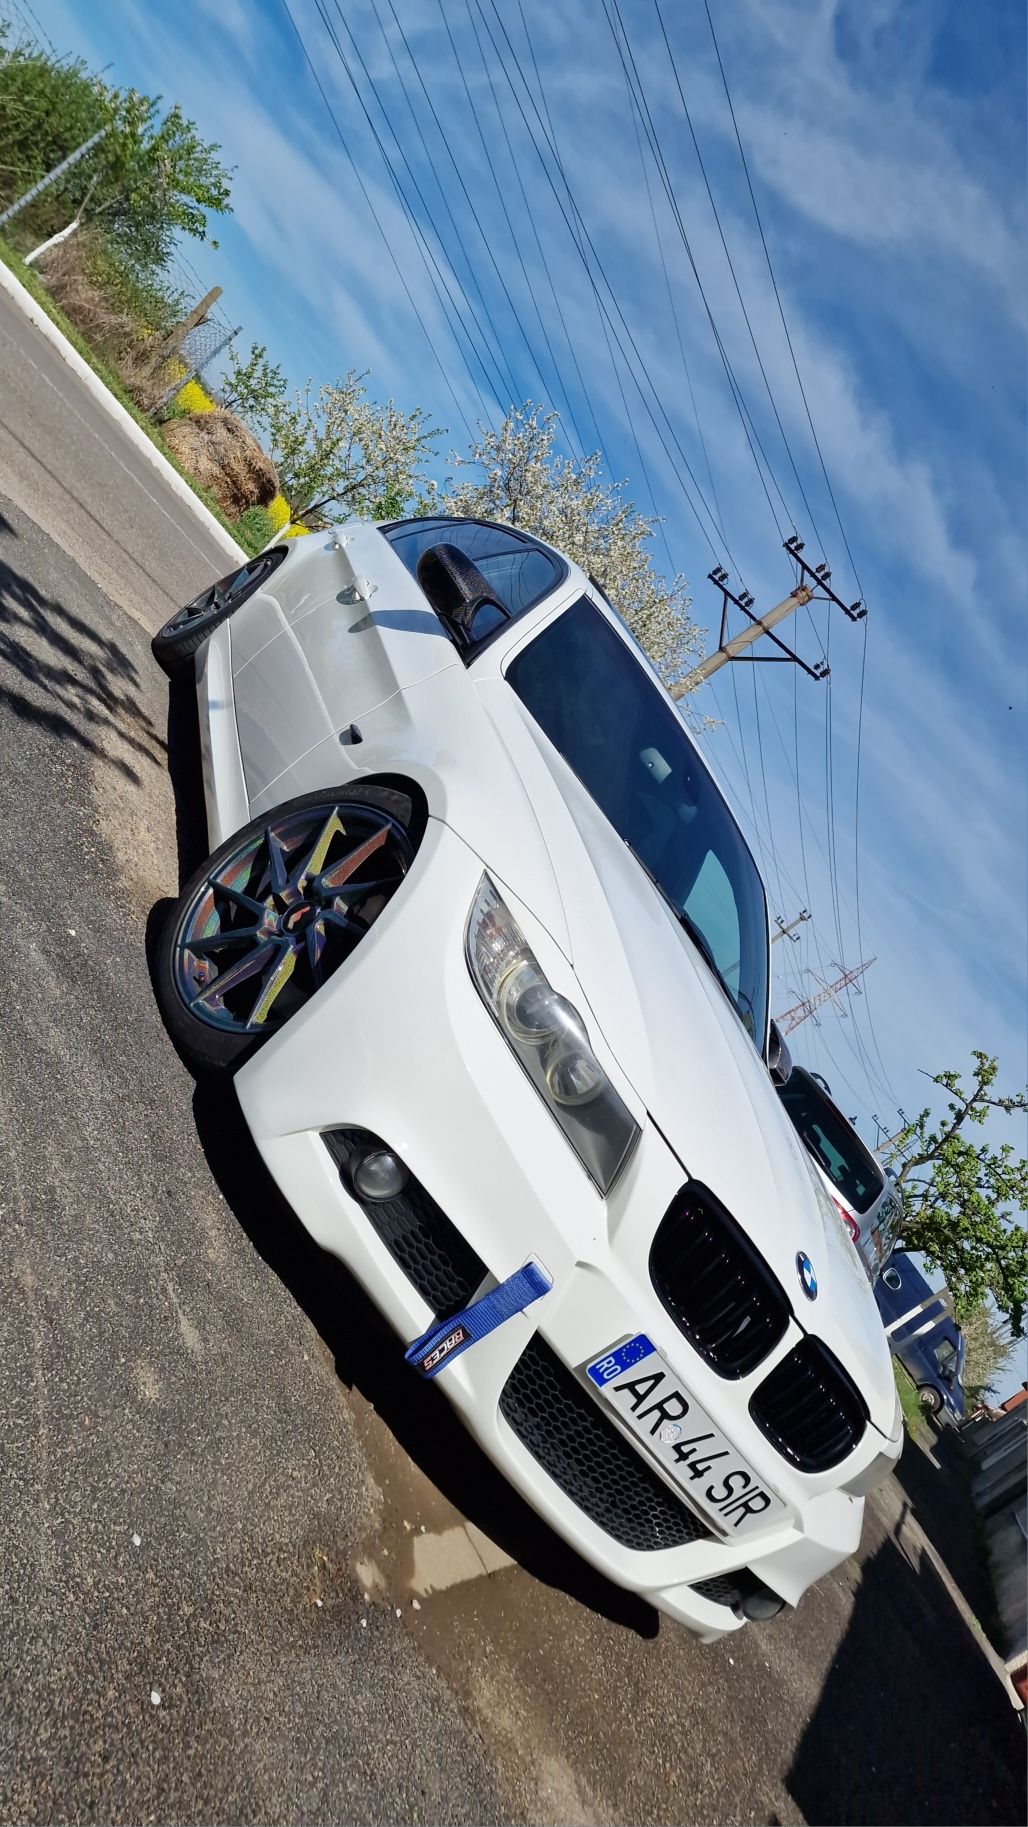 BMW E90 LCI (318D) Distributie schimbata